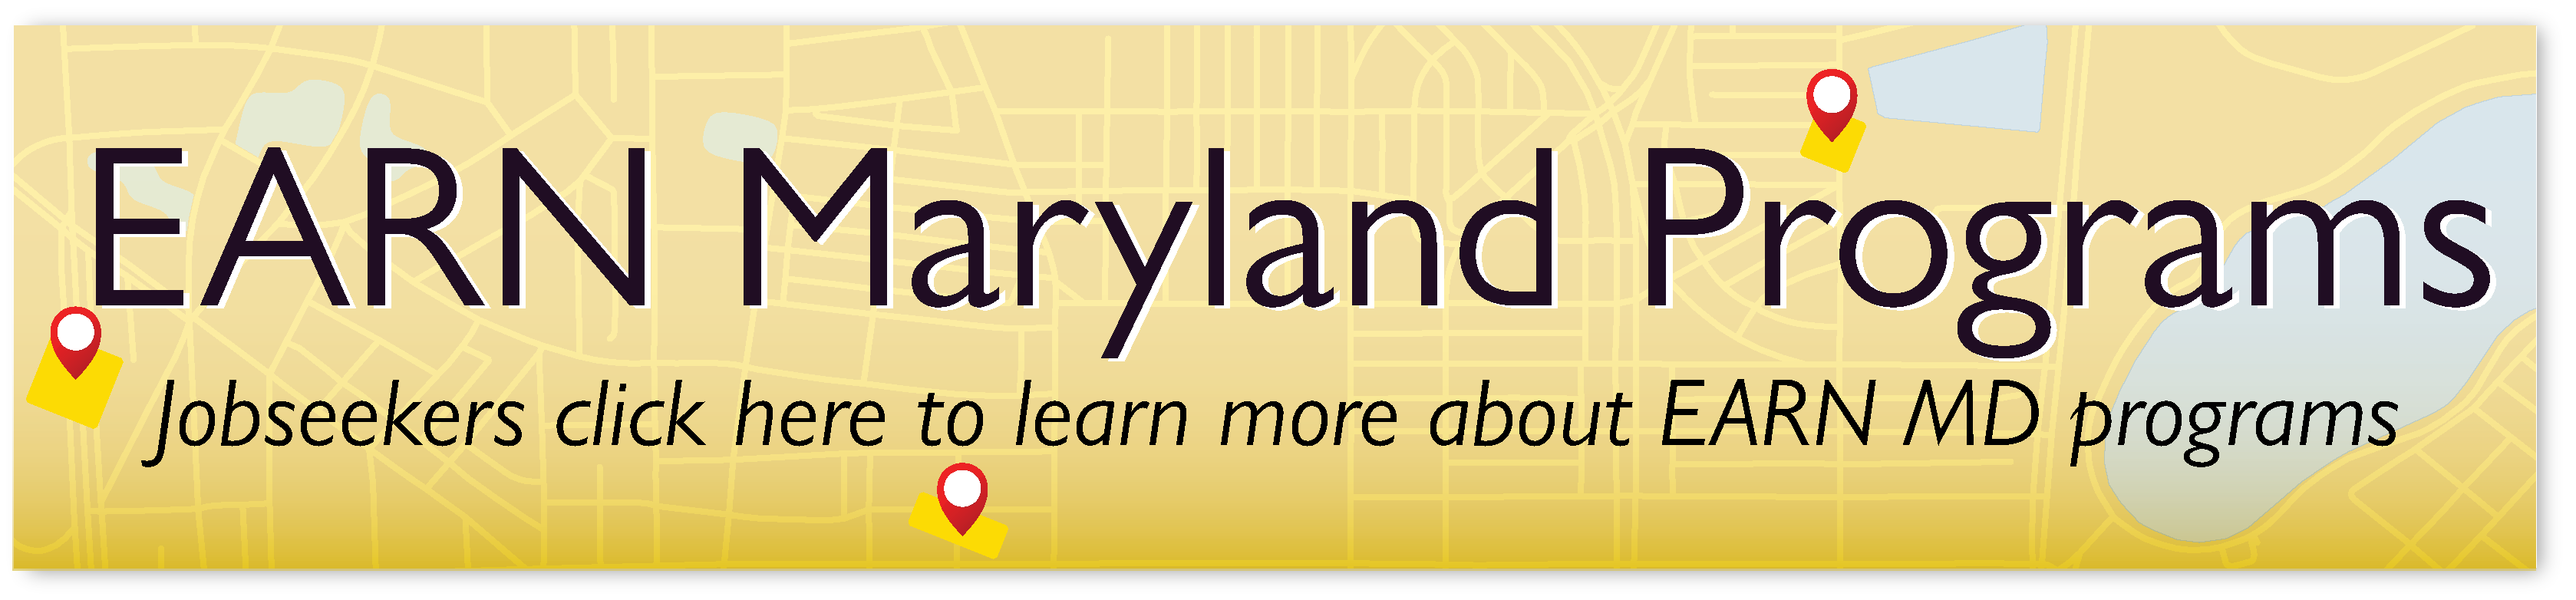 EARN Maryland programs